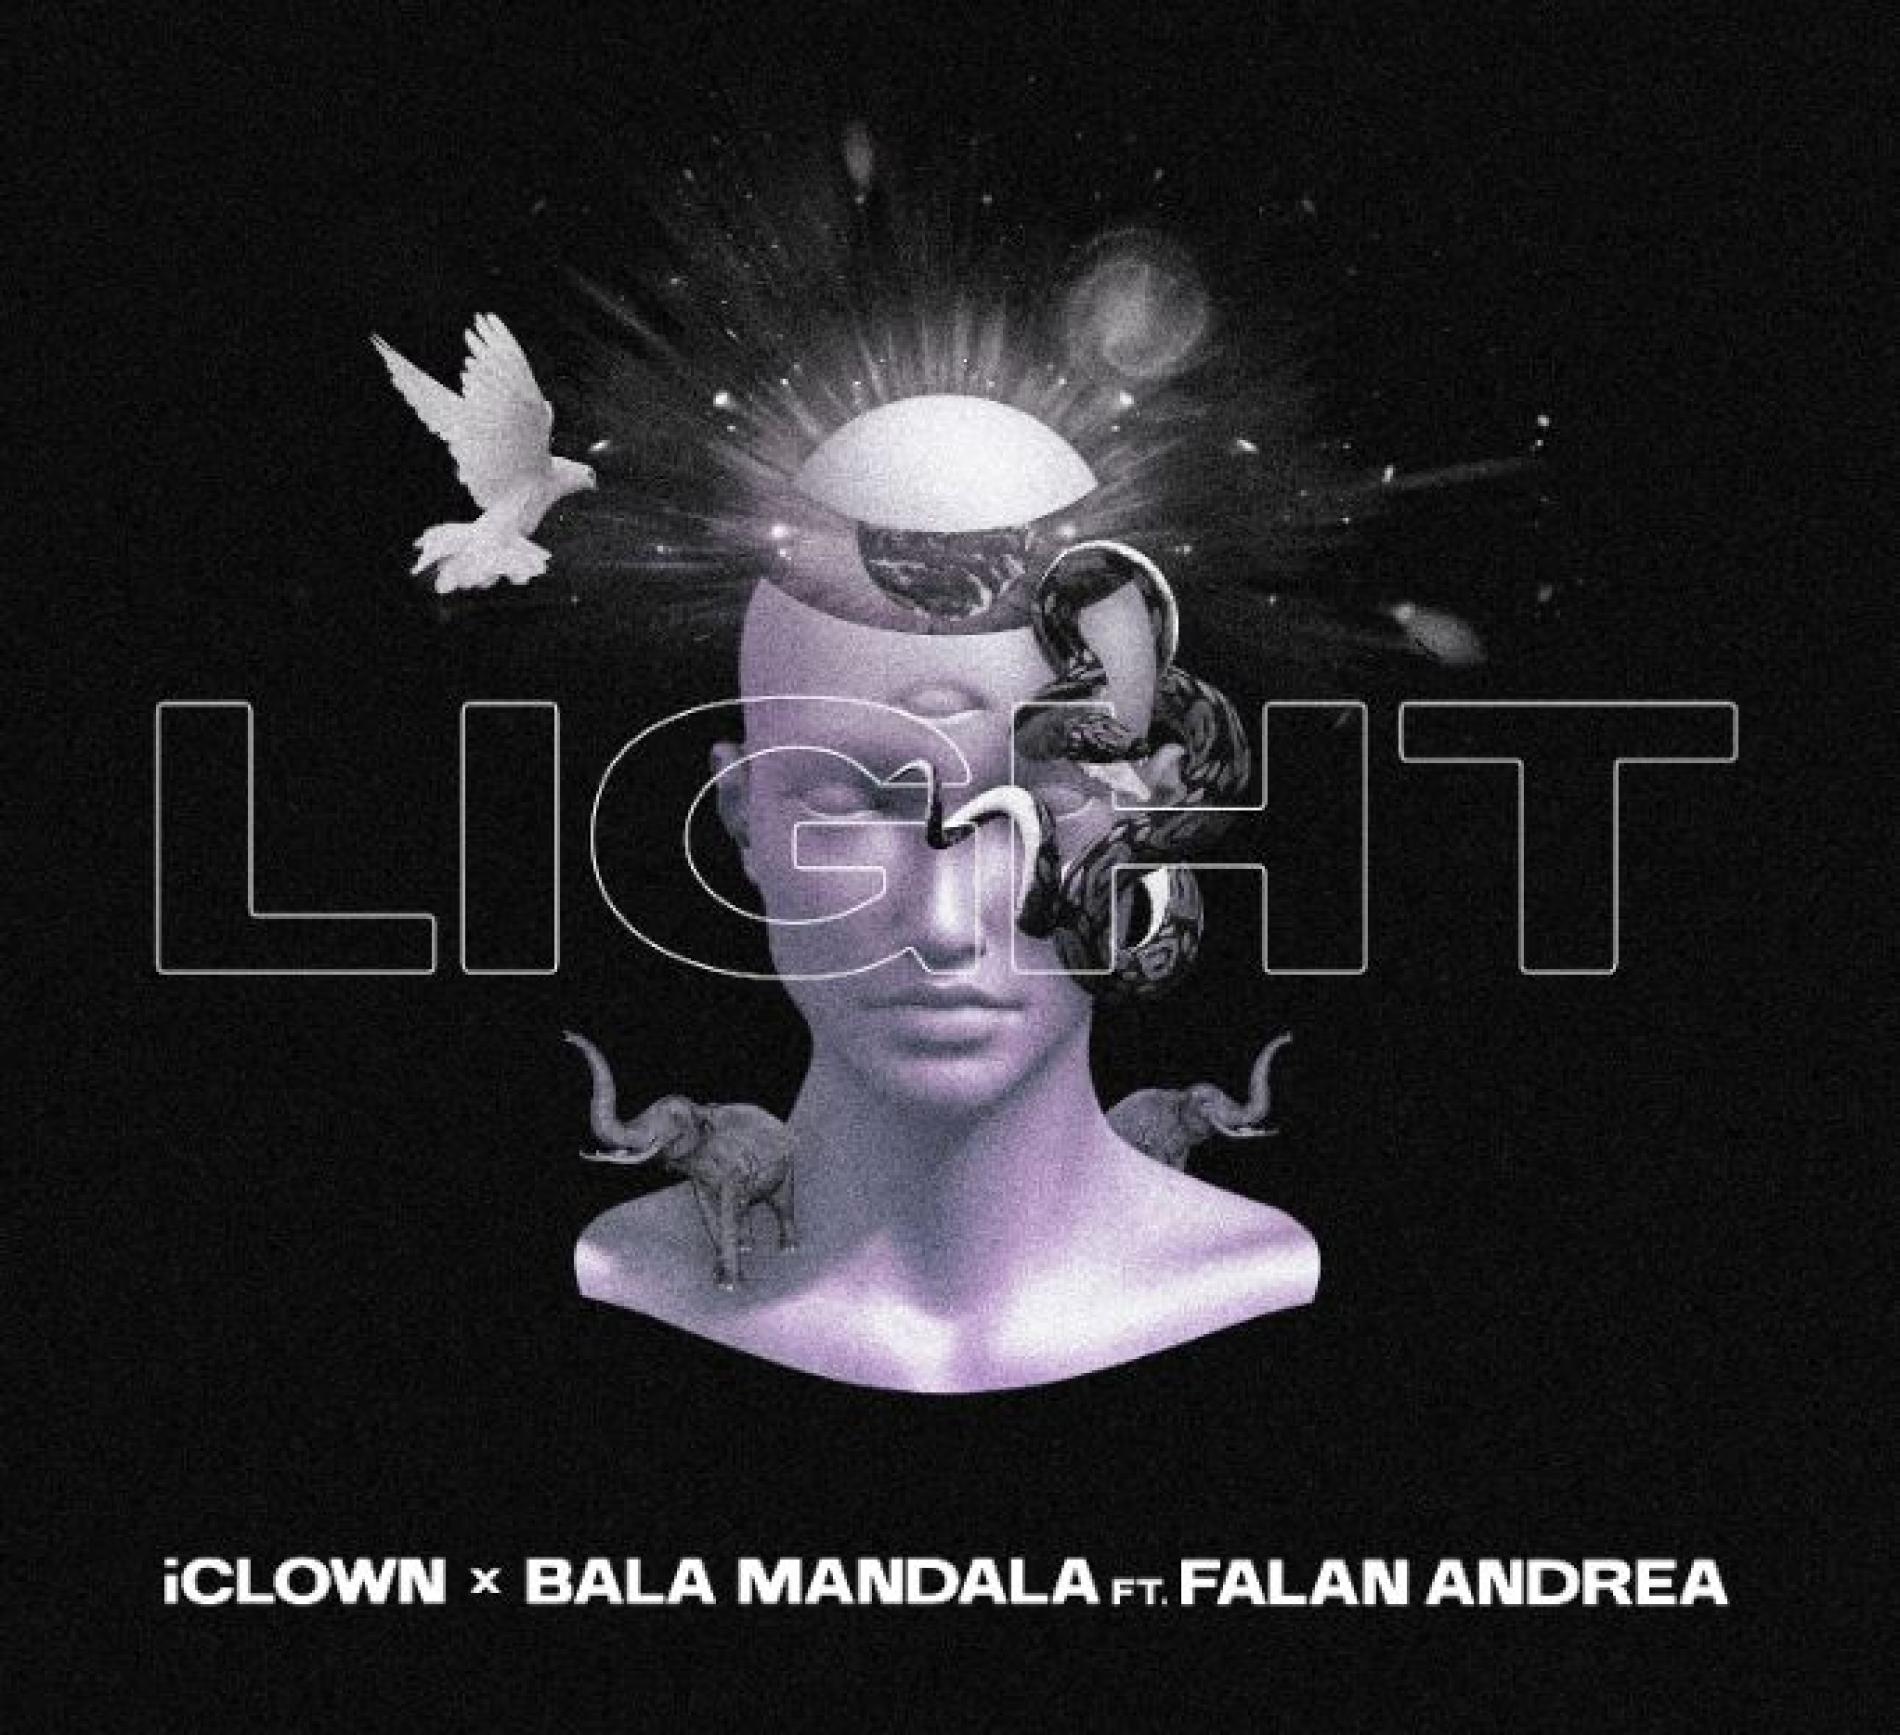 iClown and Bala Mandala – LIGHT ft Falan Andrea